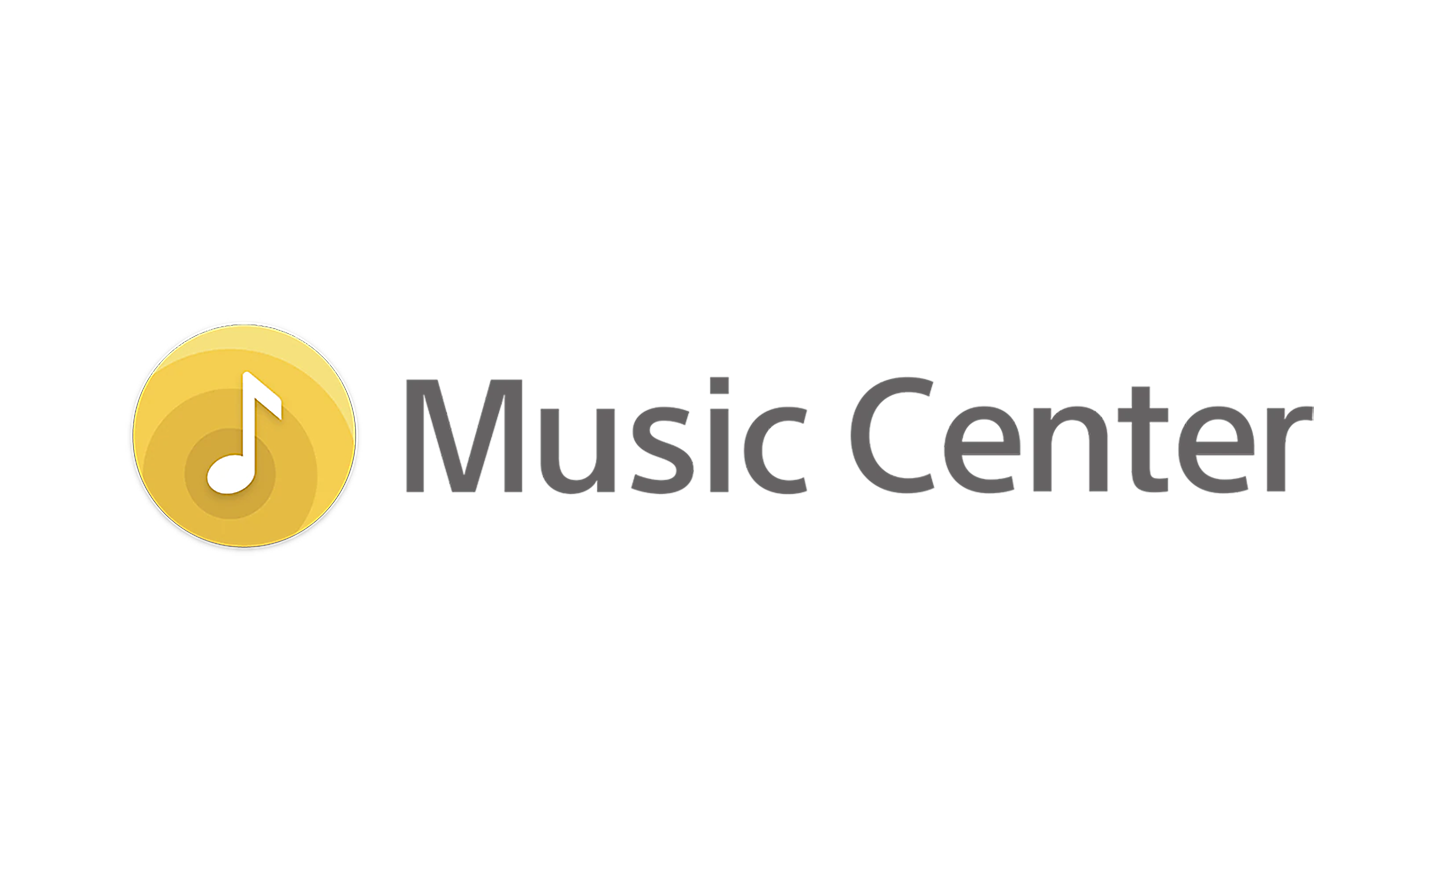 Εικόνα του λογότυπου της εφαρμογής Sony Music Center